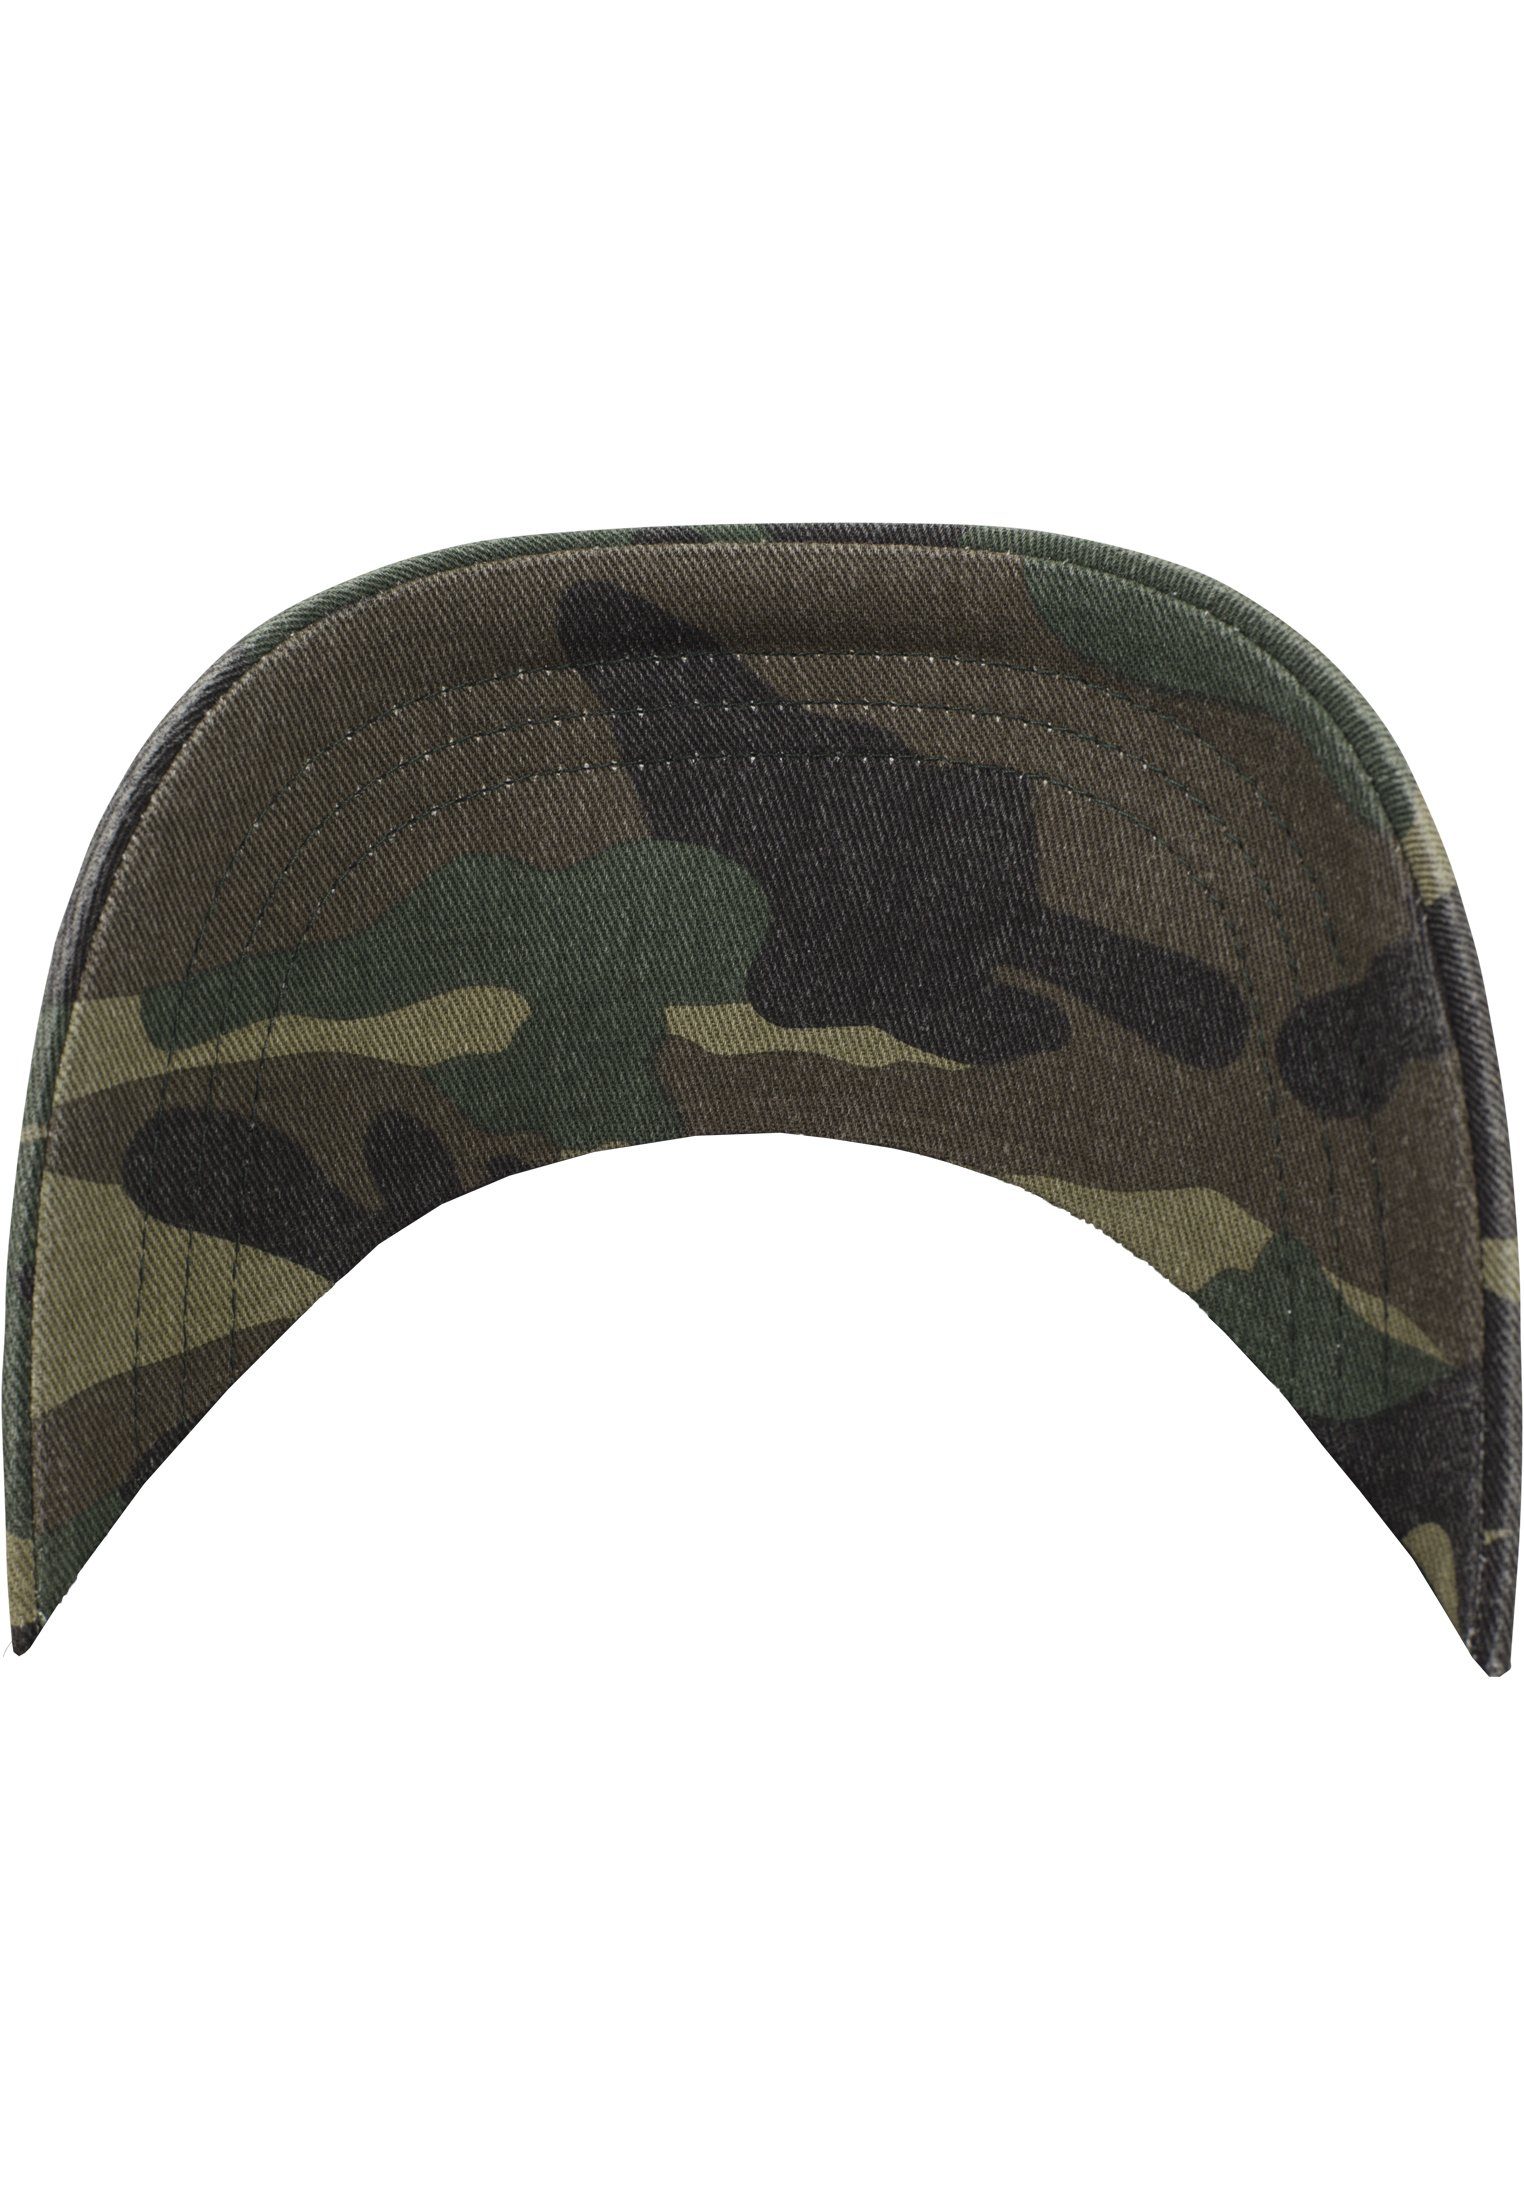 Flex Washed Accessoires Low woodcamouflage Cap Profile Camo Cap Flexfit